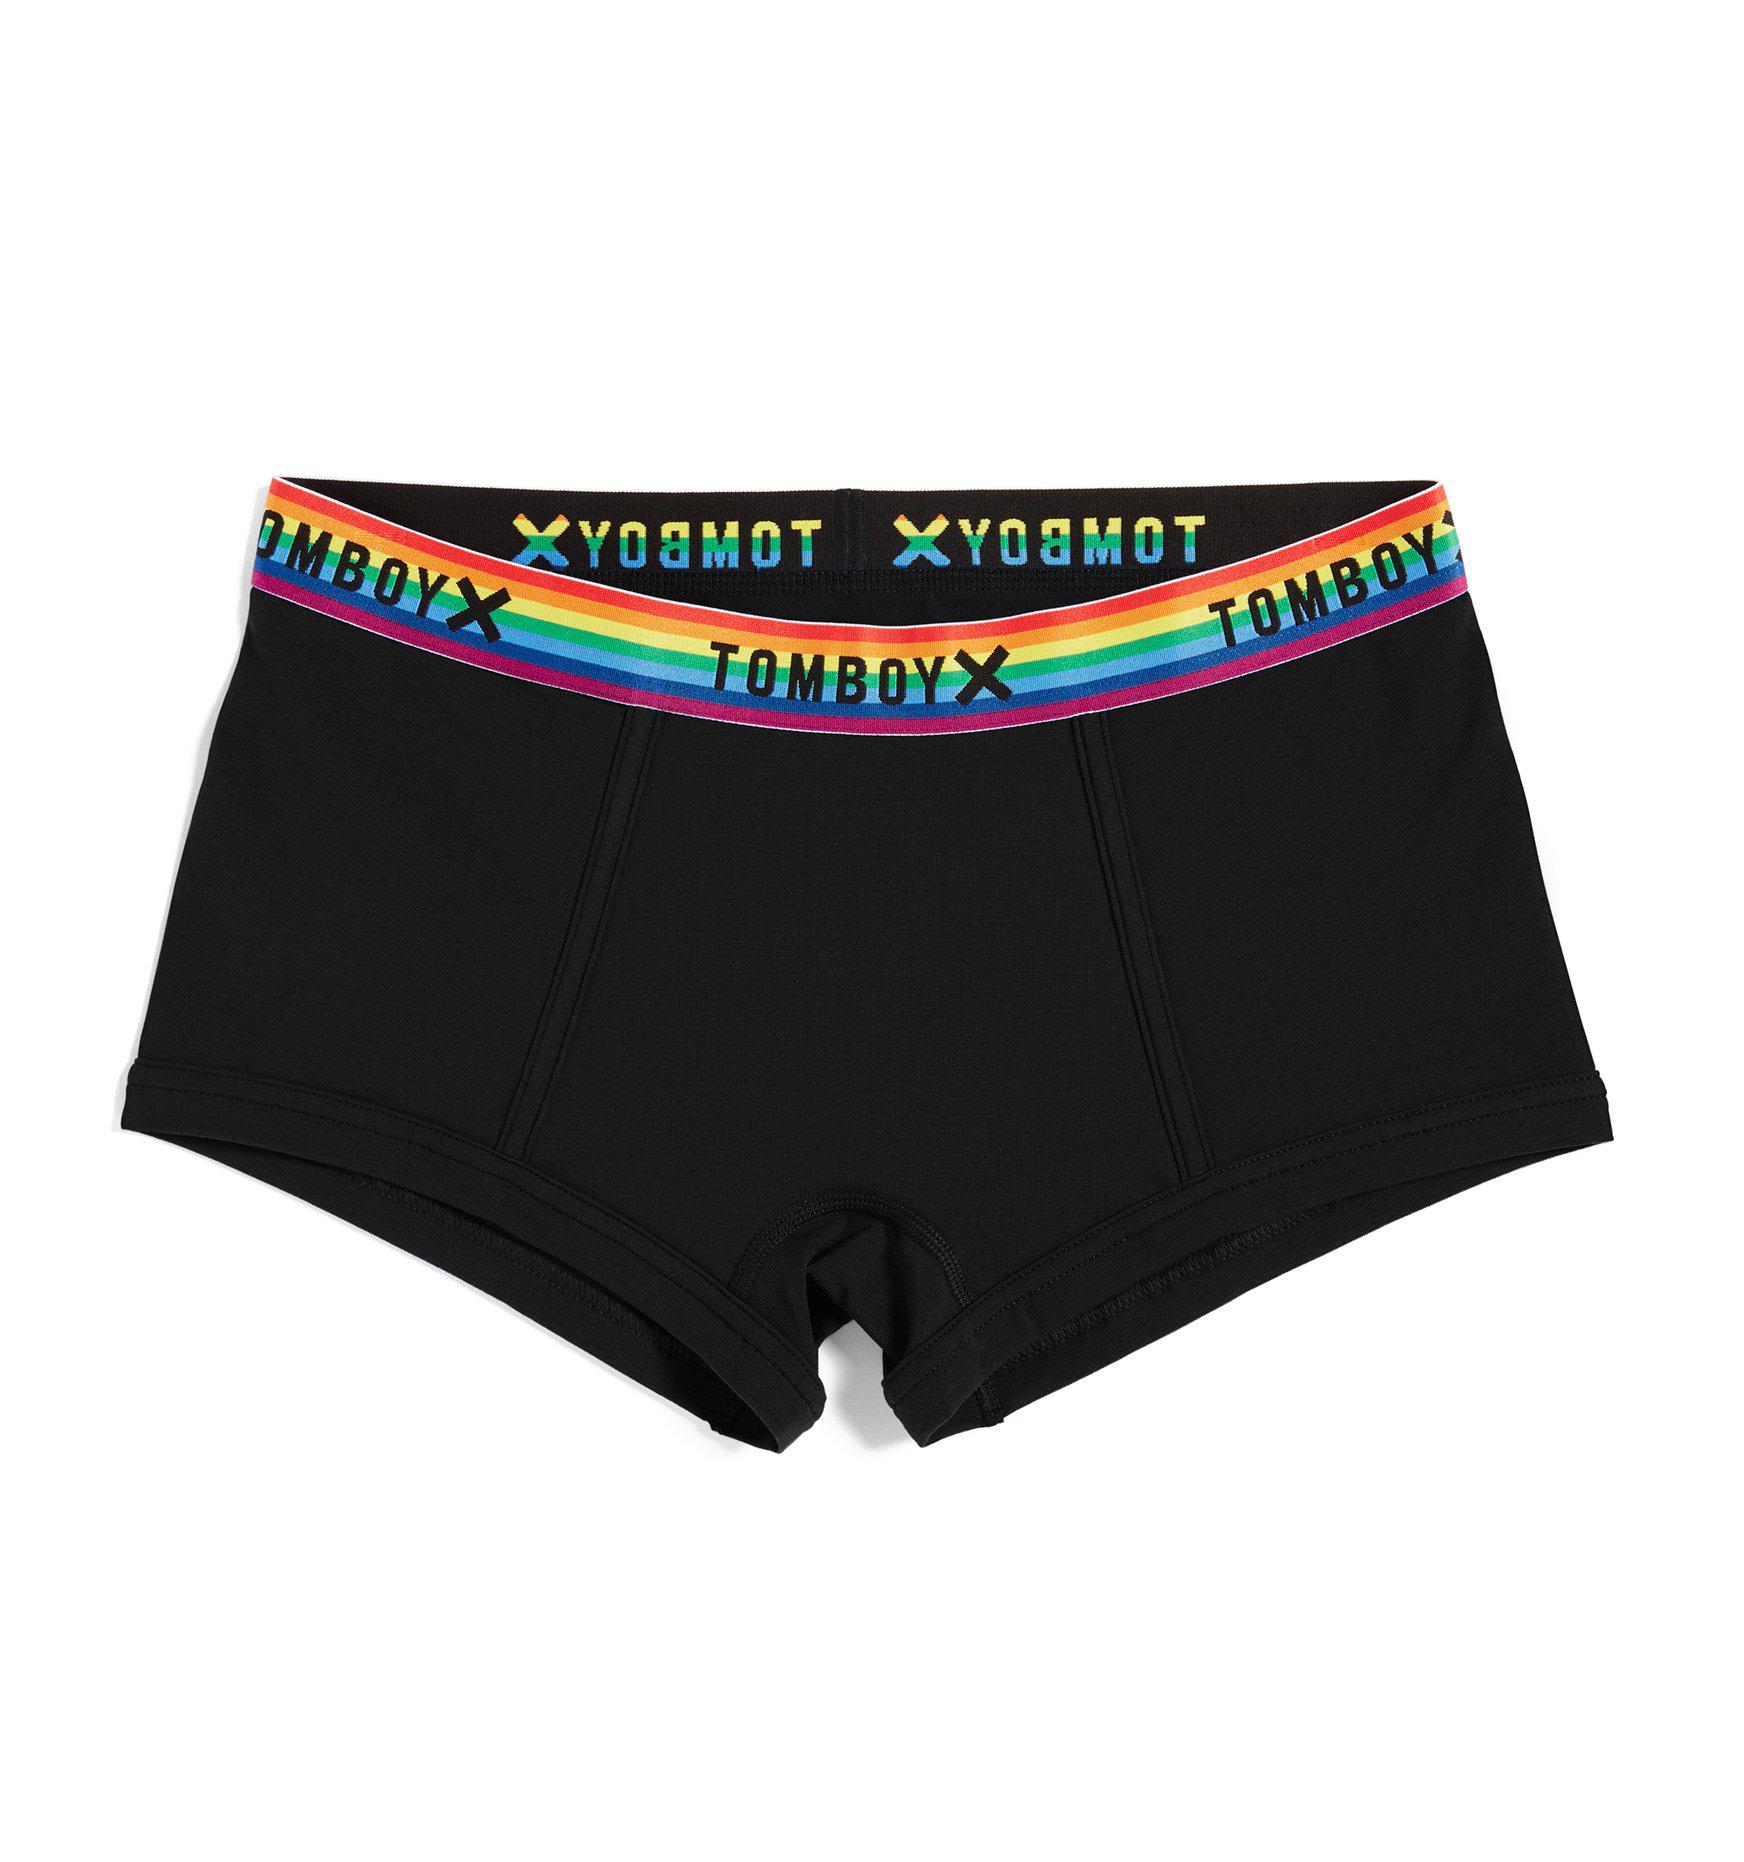 Exclusive: Boy Shorts - Next Gen Black Rainbow-Underwear-TomboyX